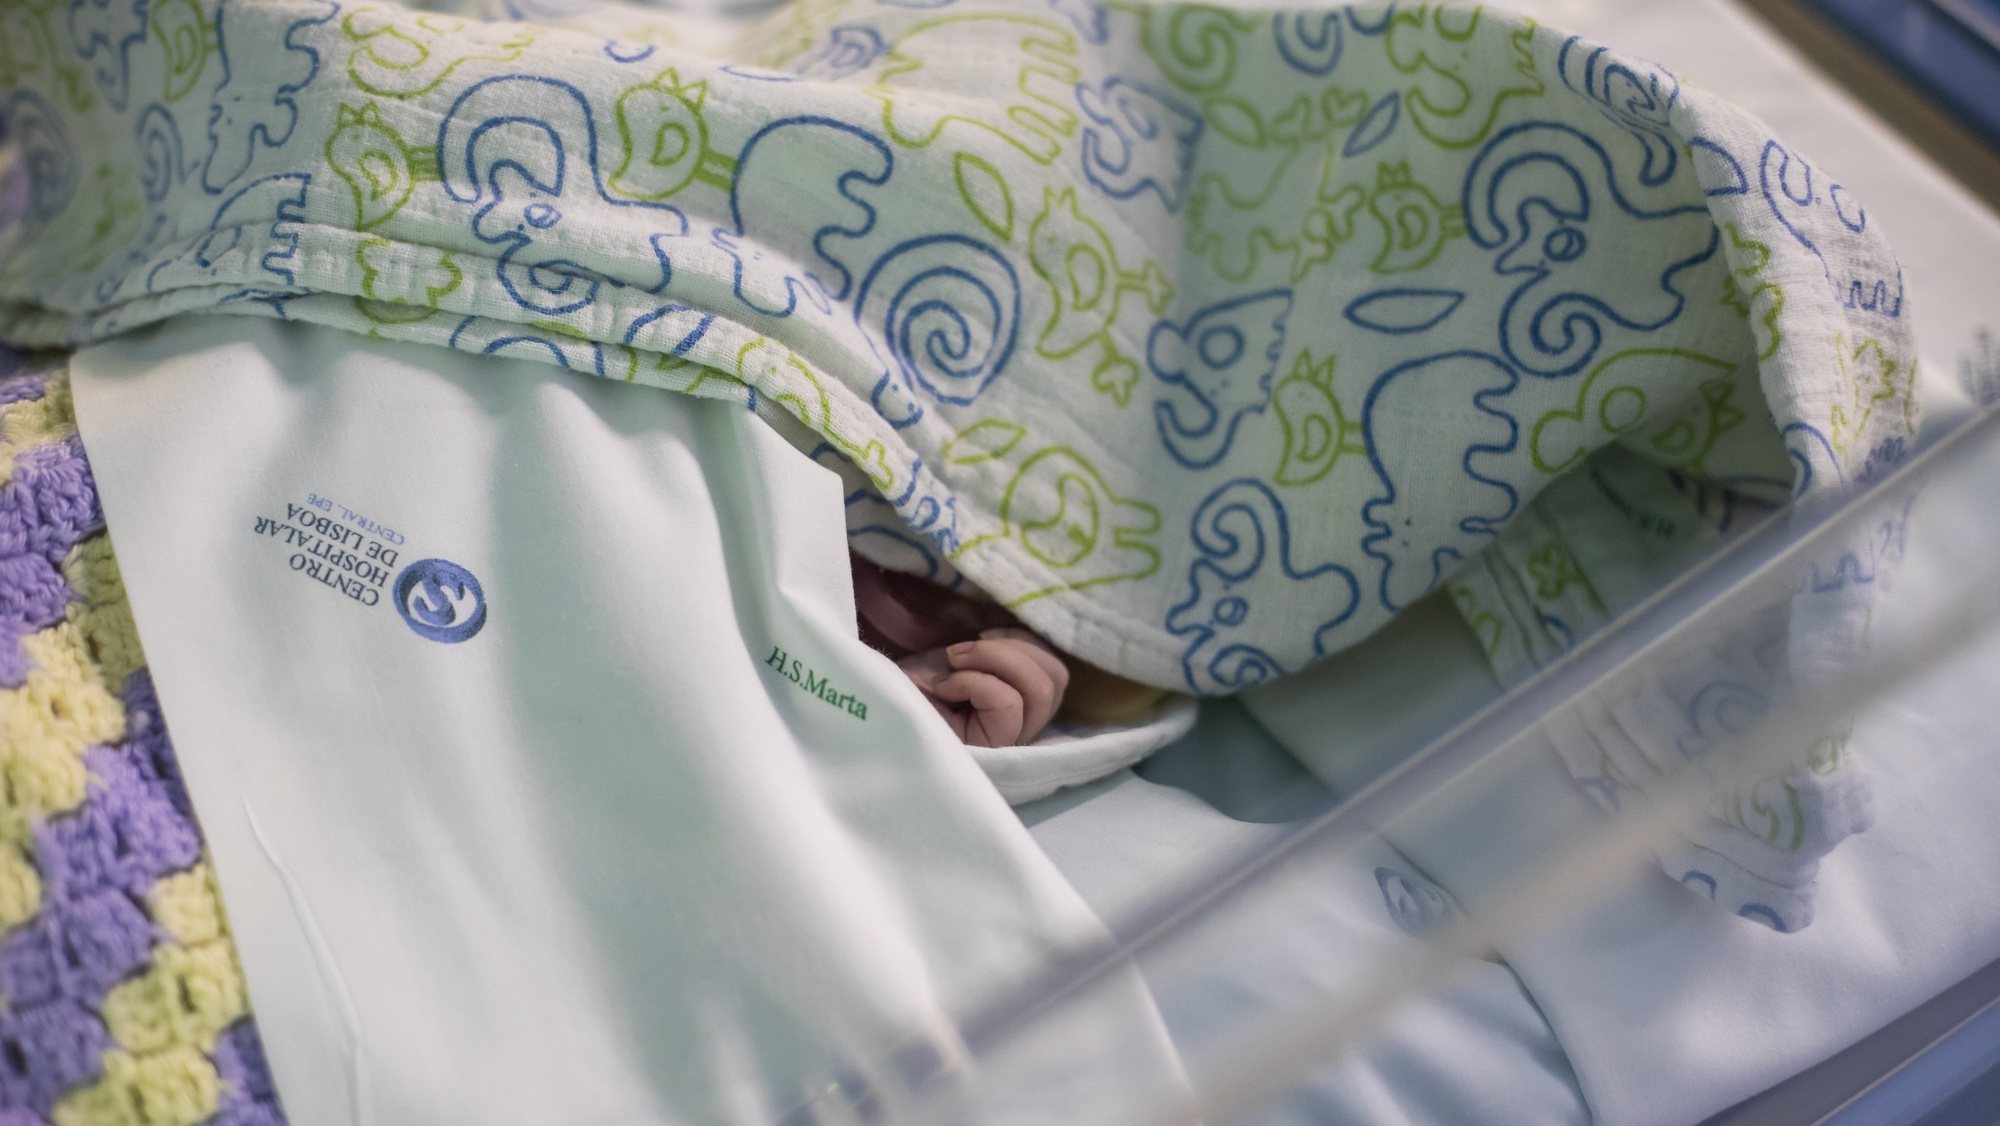 Um bebé internado no serviço de Cardiologia Pediátrica do Hospital de Santa Marta, no âmbito de uma reportagem sobre sequelas da covid-19 em crianças e adultos na unidade hospitalar, em Lisboa, 10 de fevereiro de 2021. (ACOMPANHA TEXTO DA LUSA DO DIA 13 DE FEVEREIRO DE 2021). JOSÉ SENA GOULÃO/LUSA